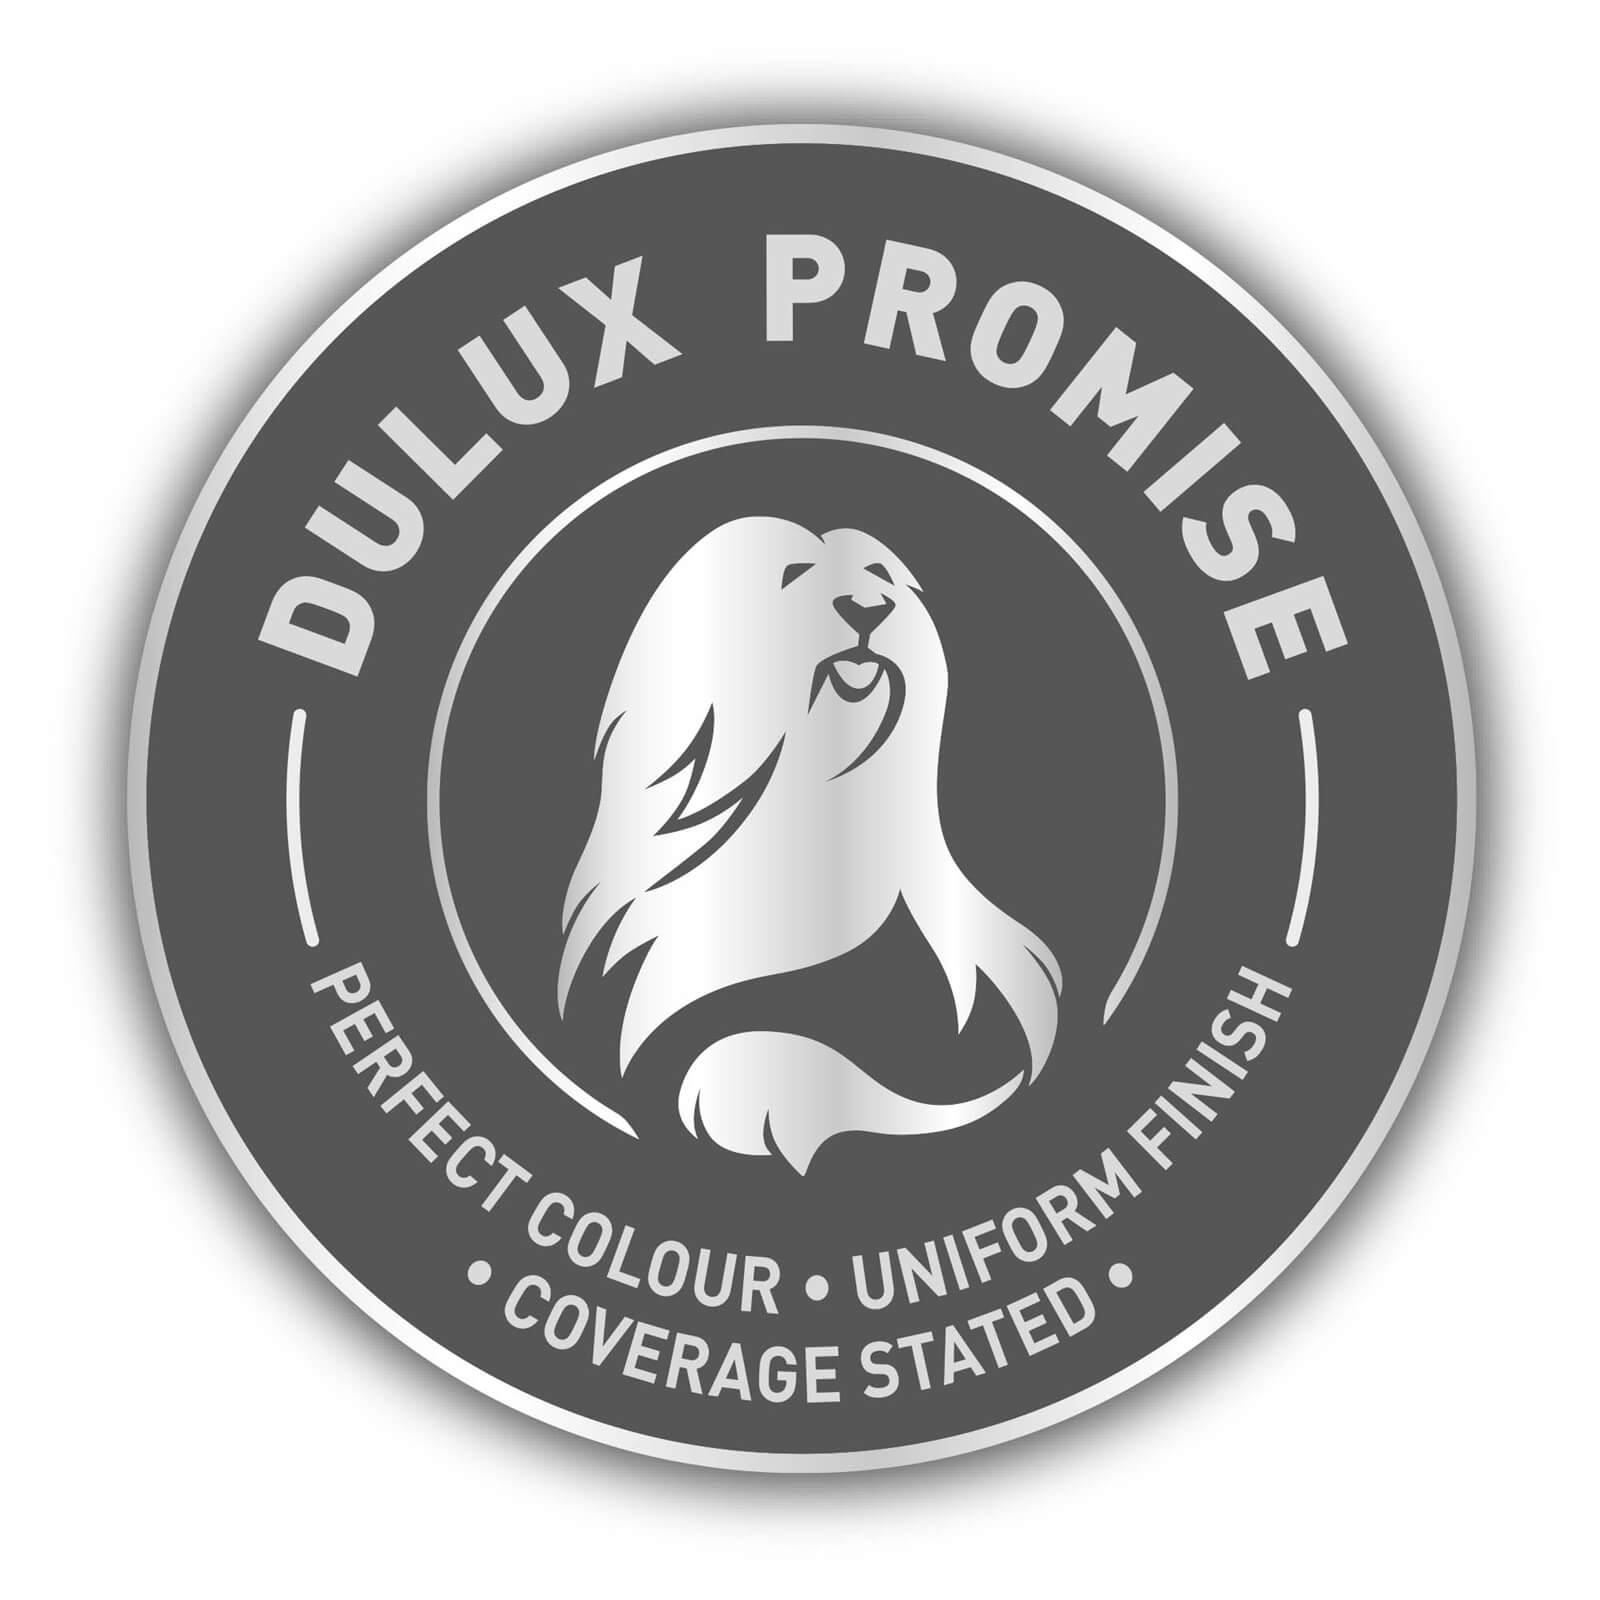 Dulux Matt Emulsion Paint Summer Linen - 5L